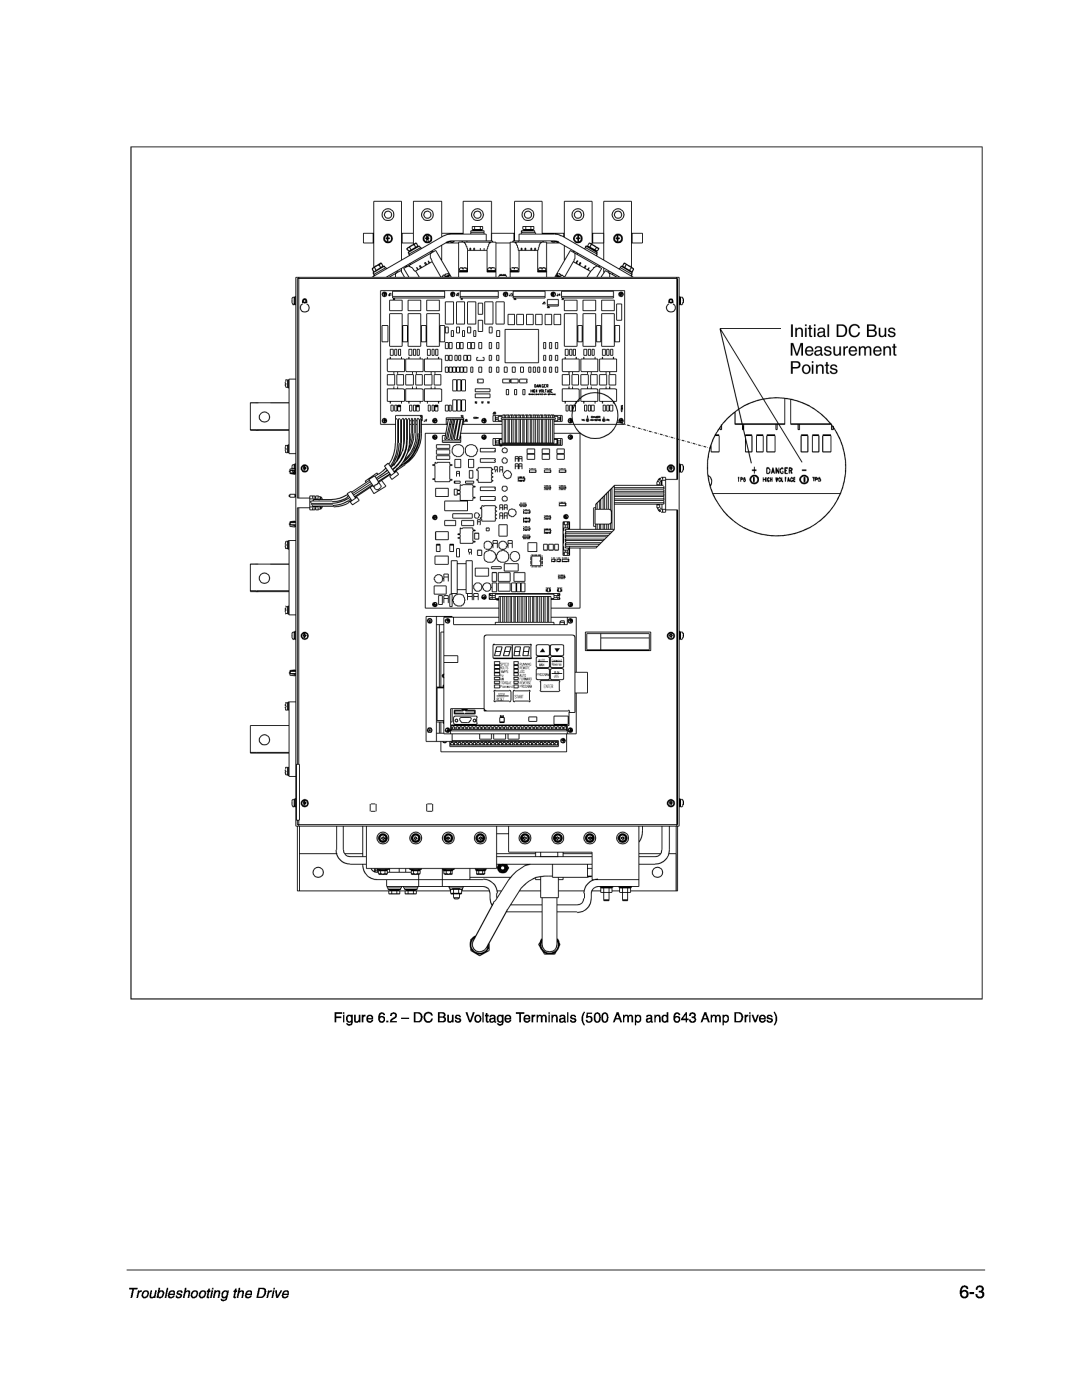 Carrier D2-3466-2 Initial DC Bus, Measurement, Points, 2 - DC Bus Voltage Terminals 500 Amp and 643 Amp Drives 